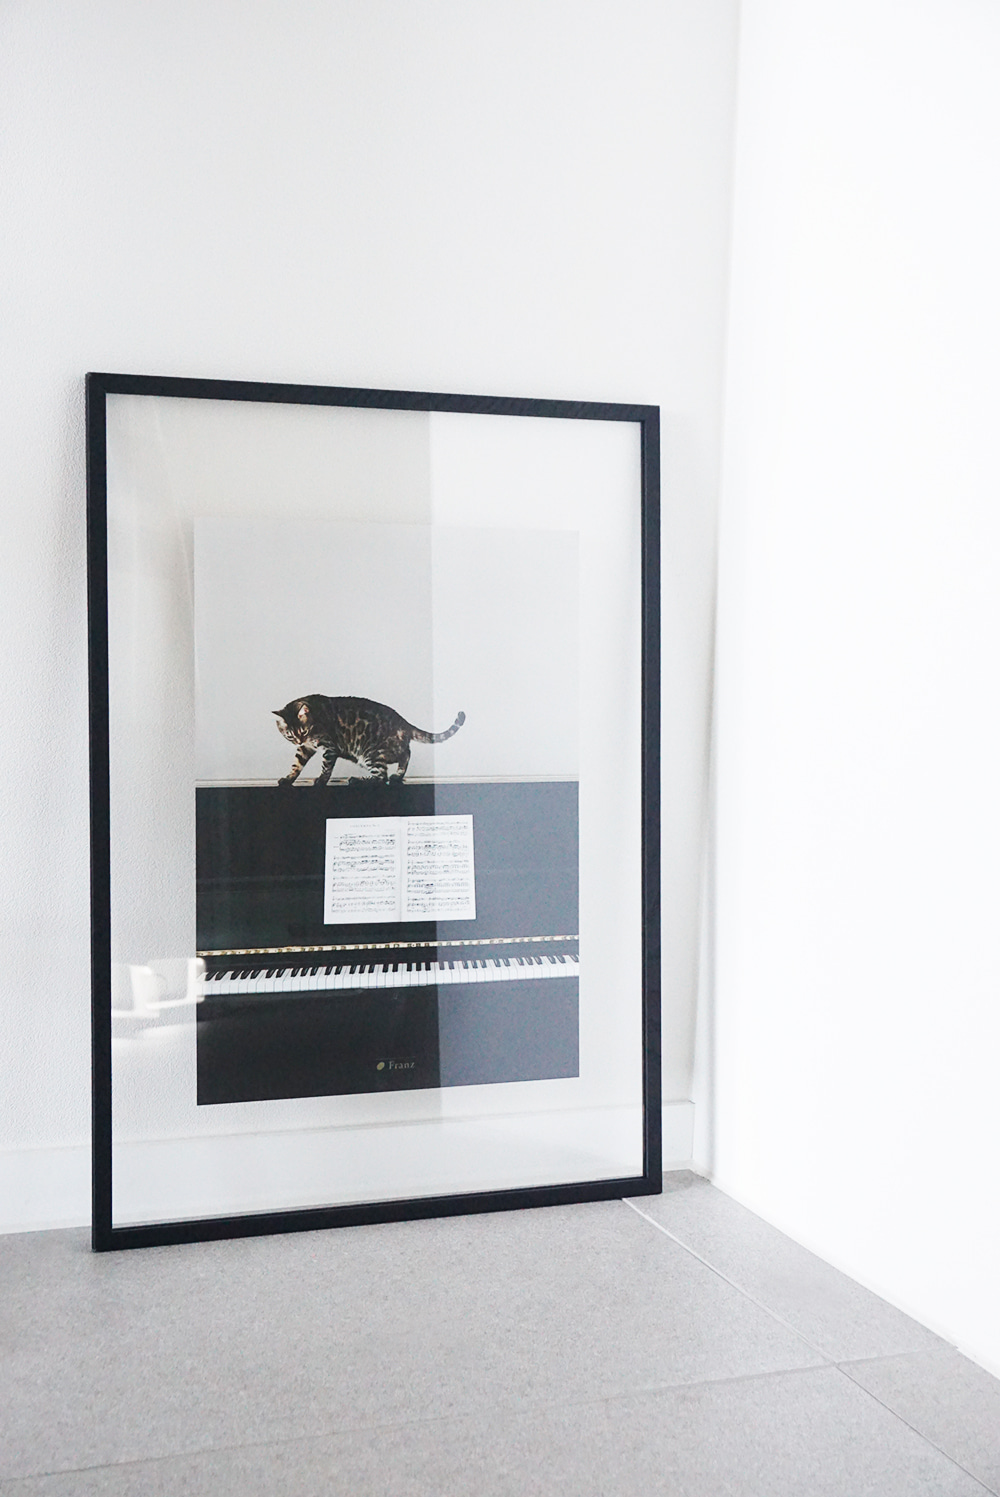 피아노 위 고양이 포스터